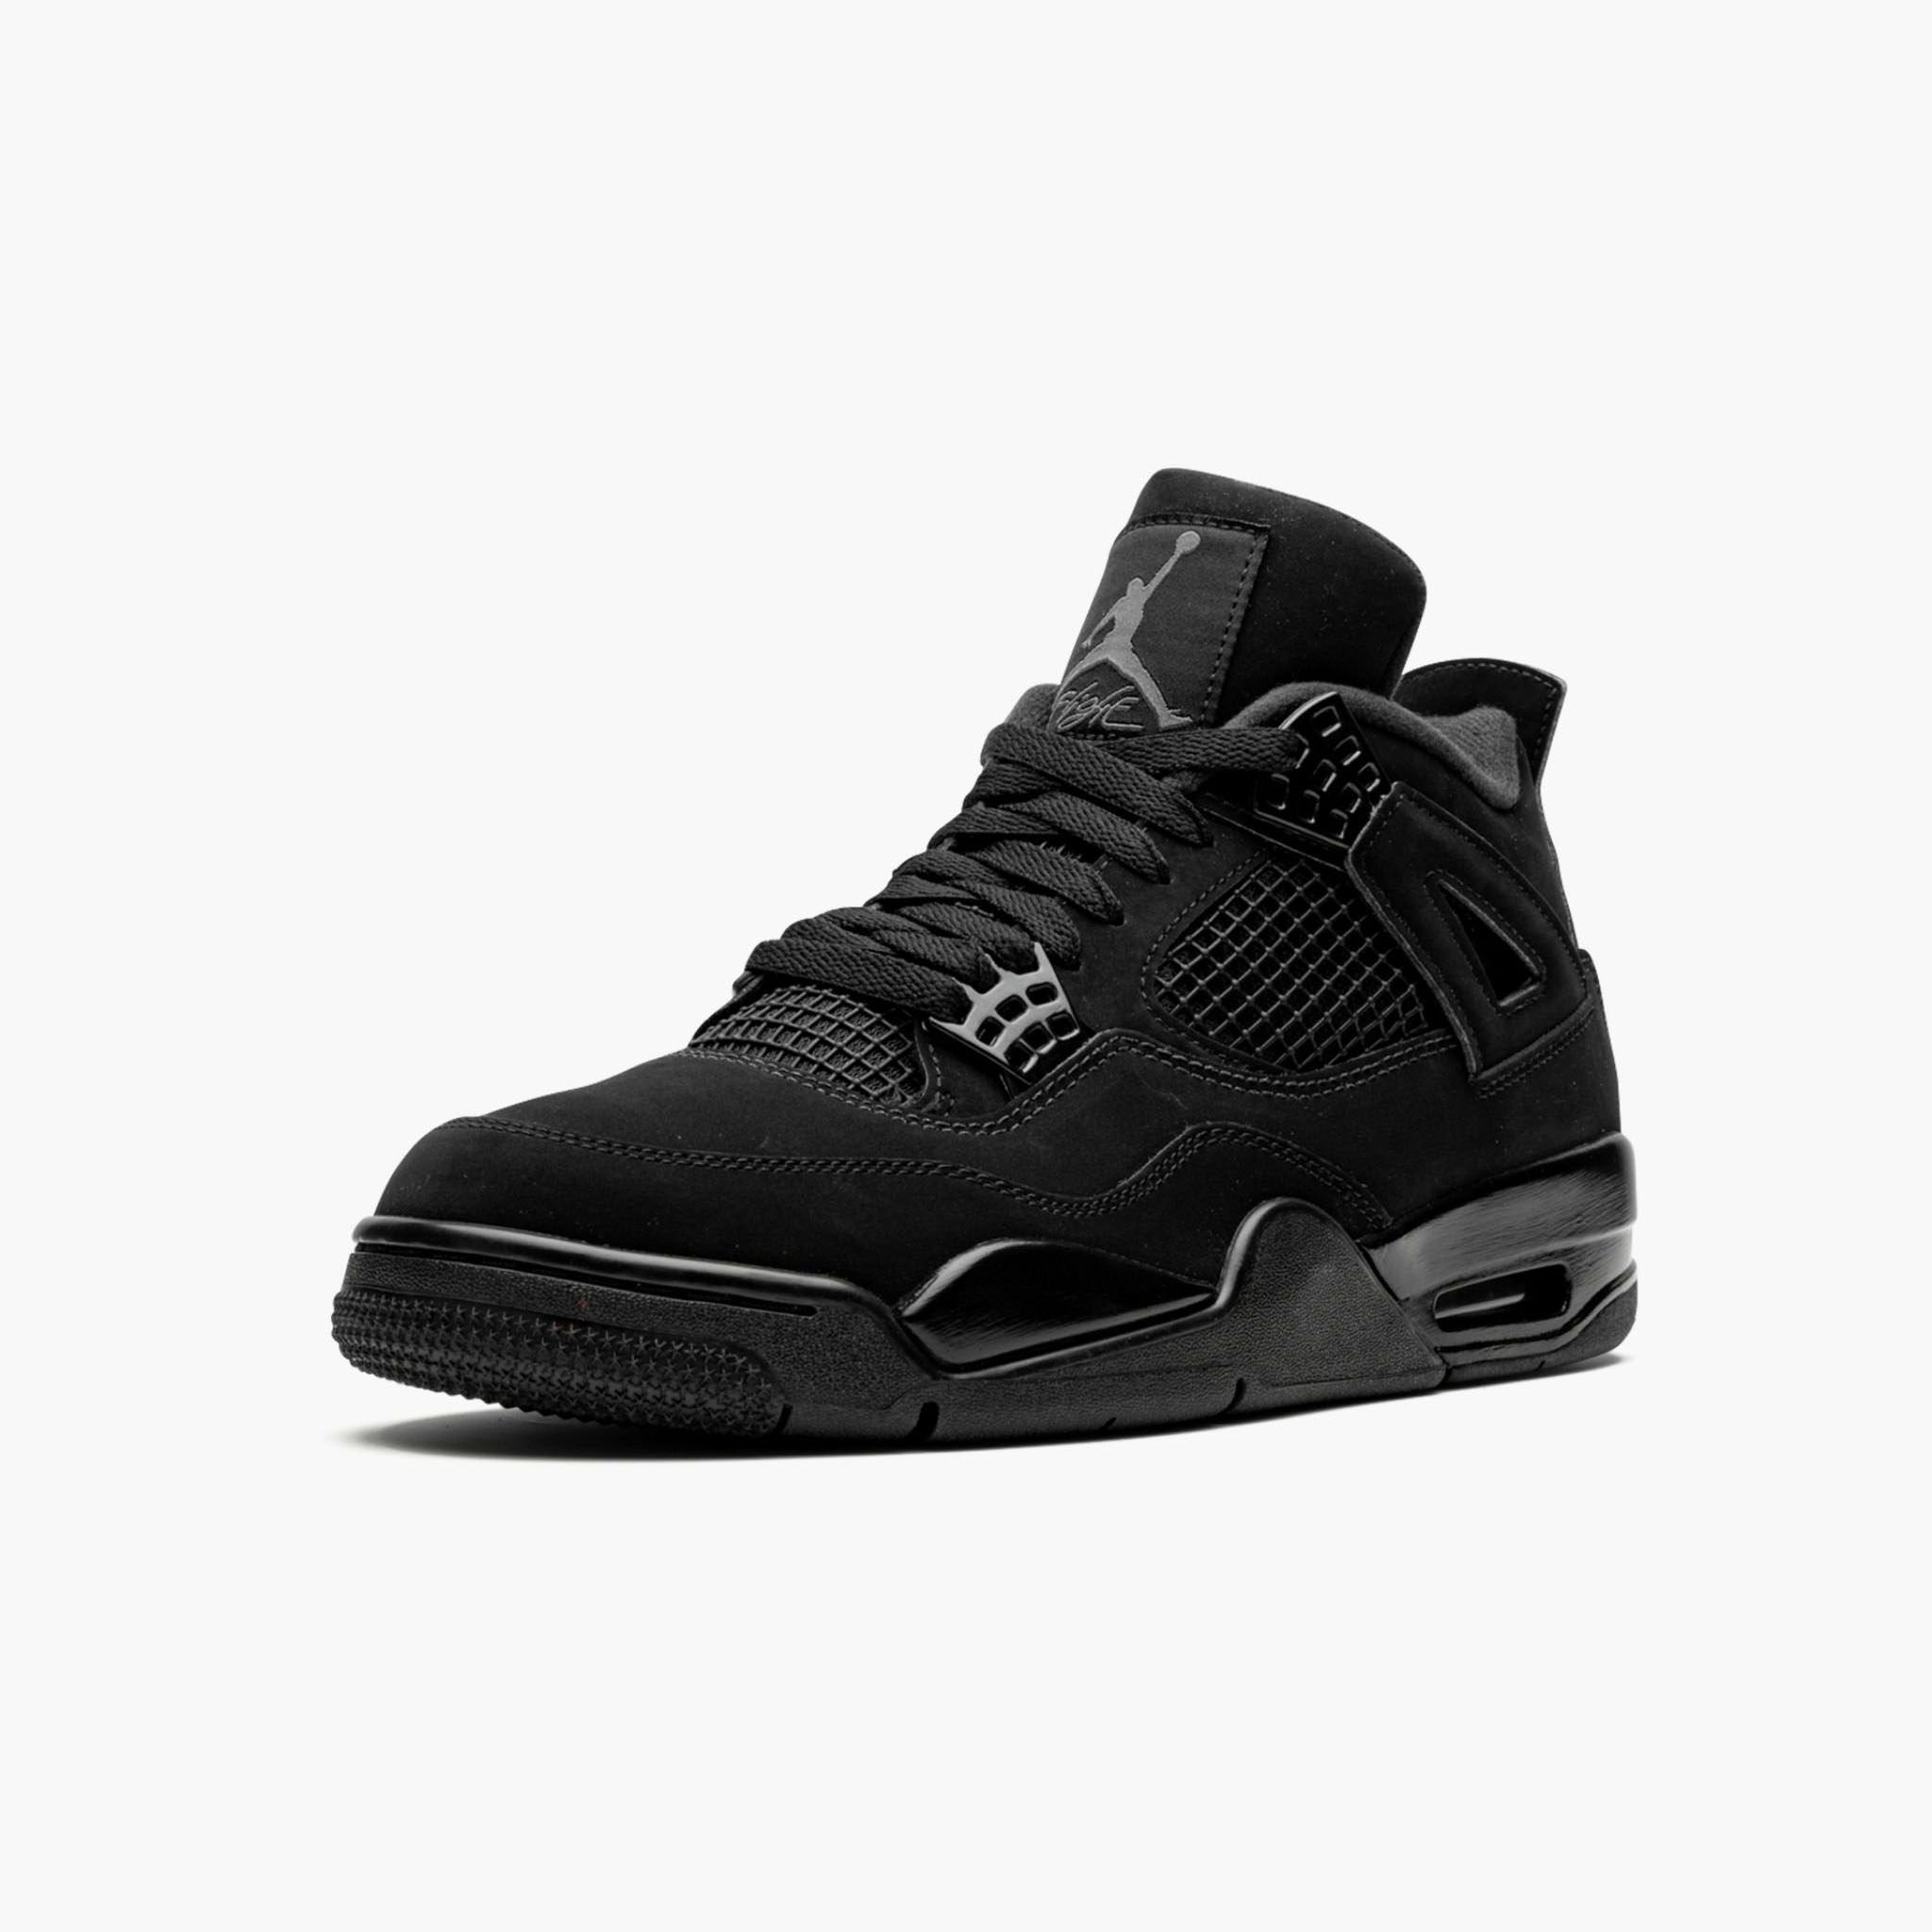 Size 12 - Jordan 4 Black Cat 2020